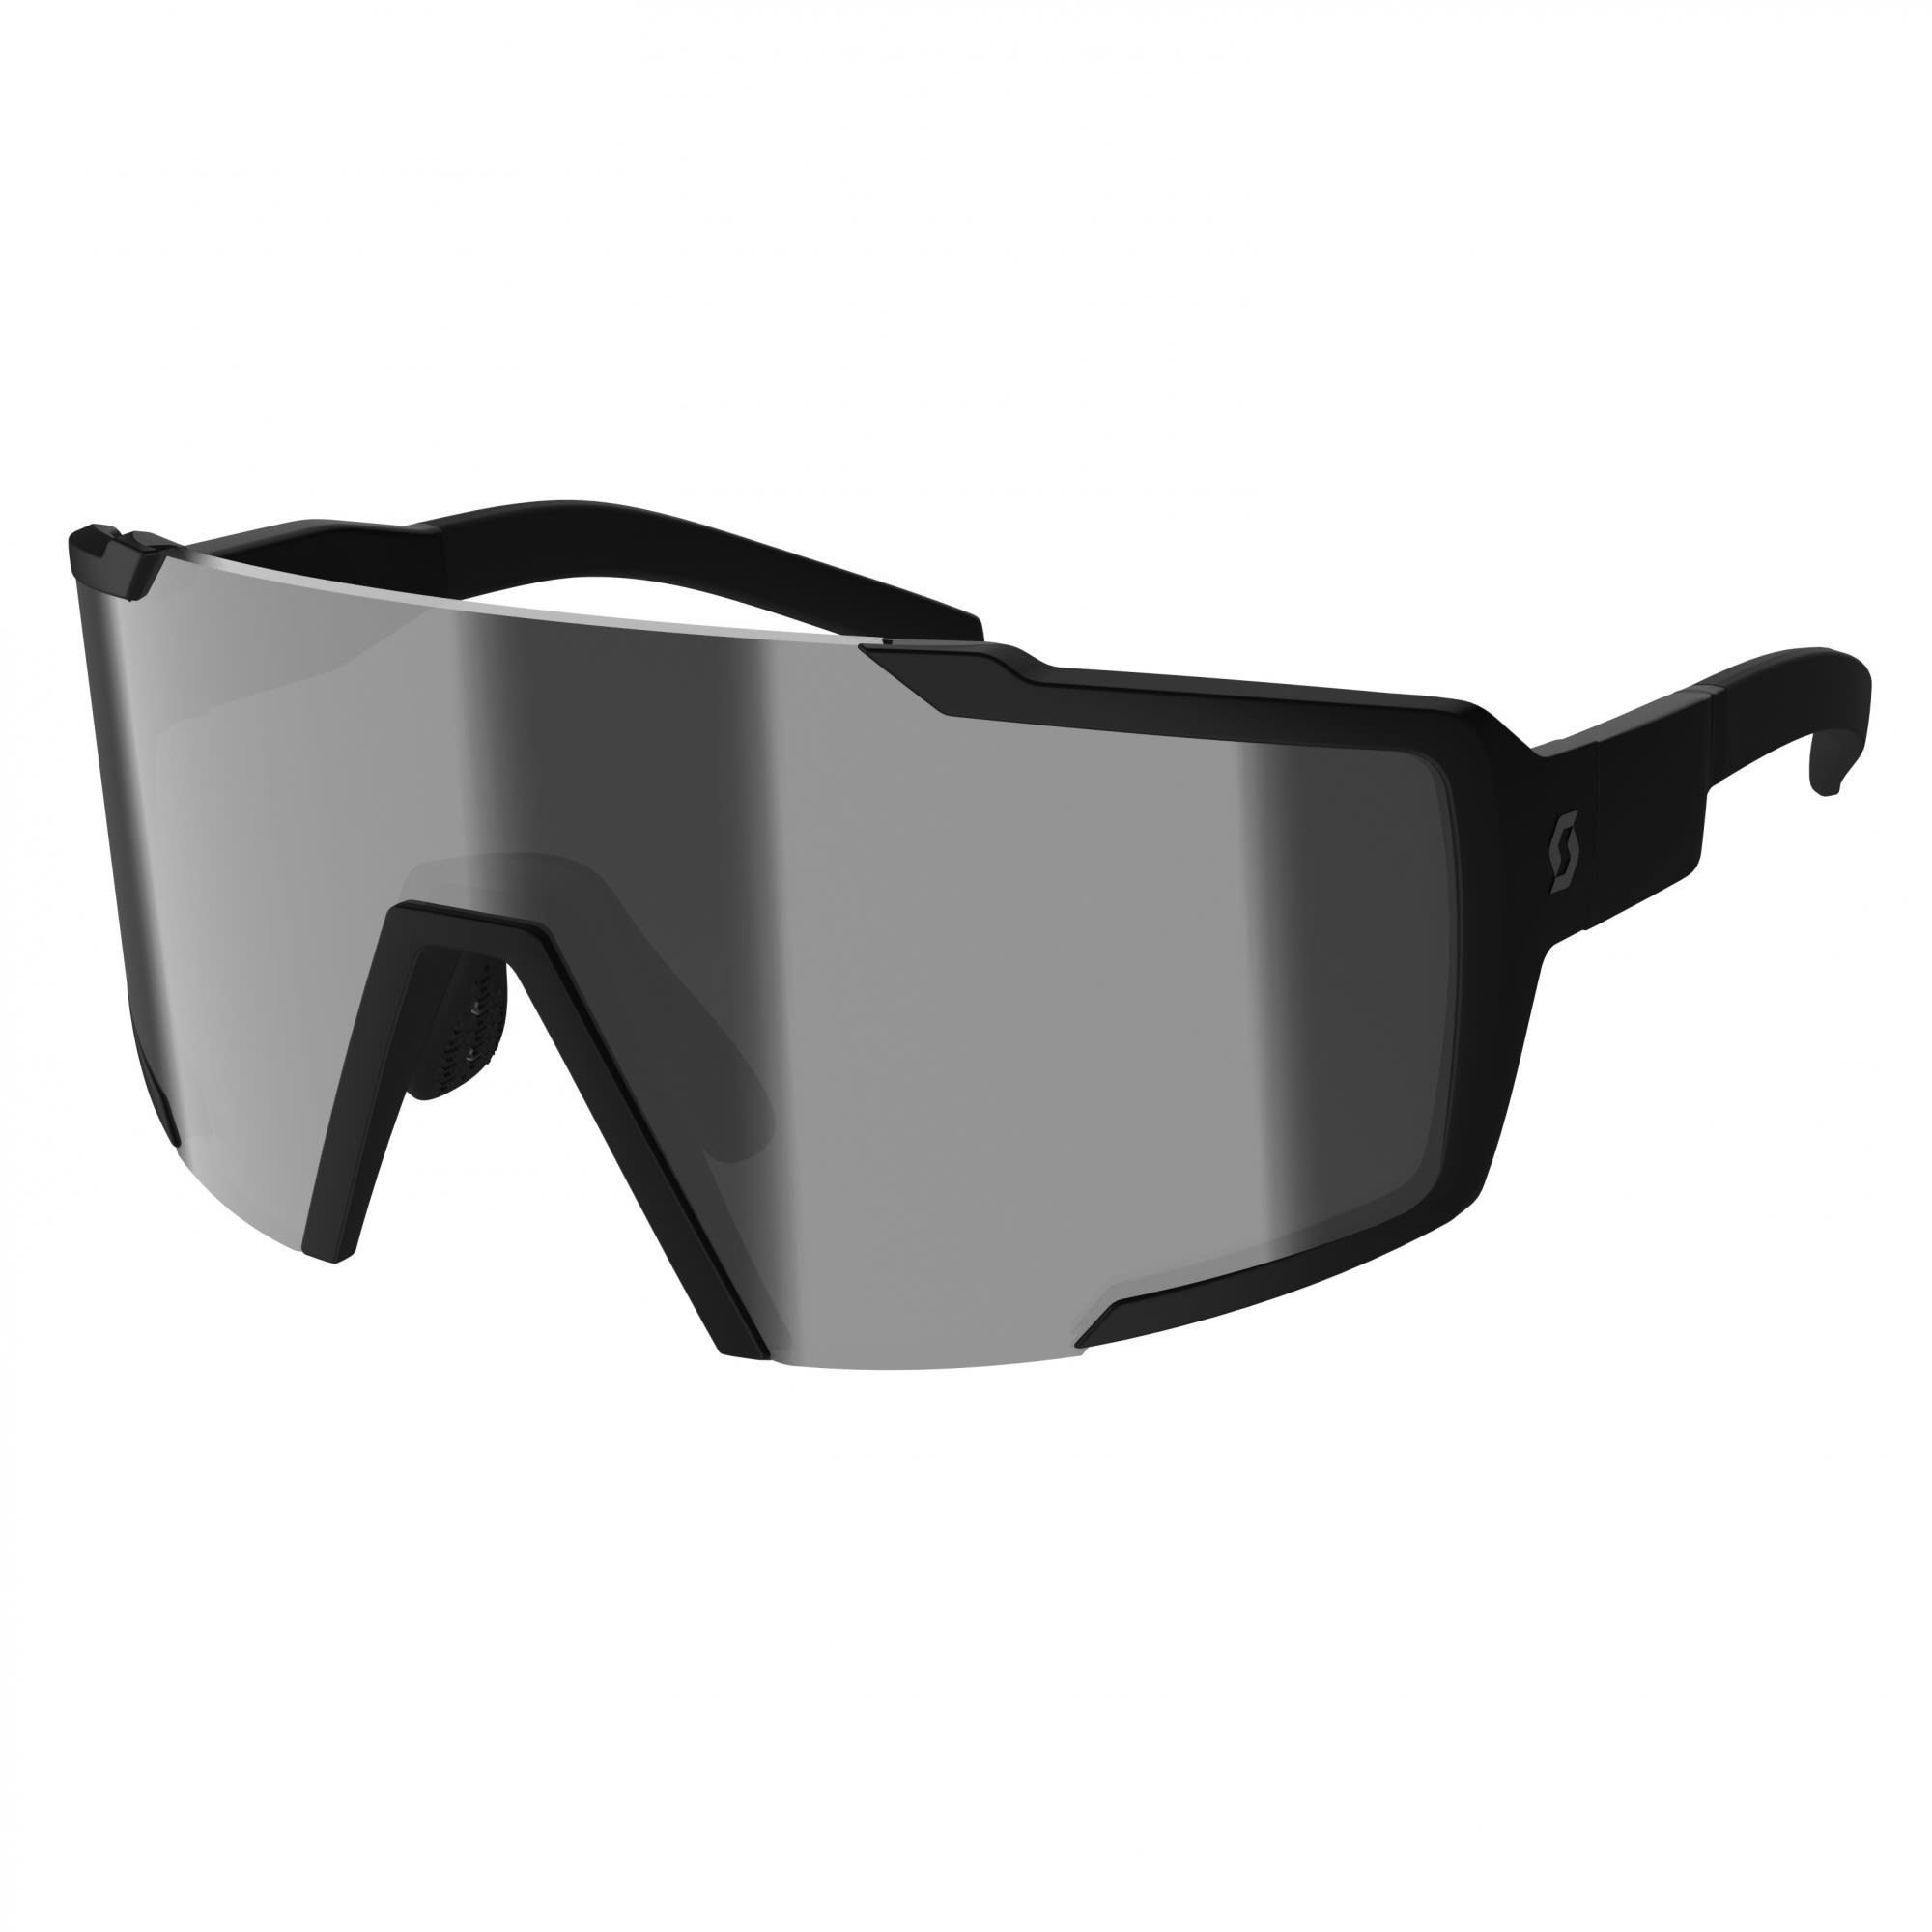 Scott Fahrradbrille Scott Shield Compact Sunglasses Accessoires Black Matt - Grey | Fahrradbrillen